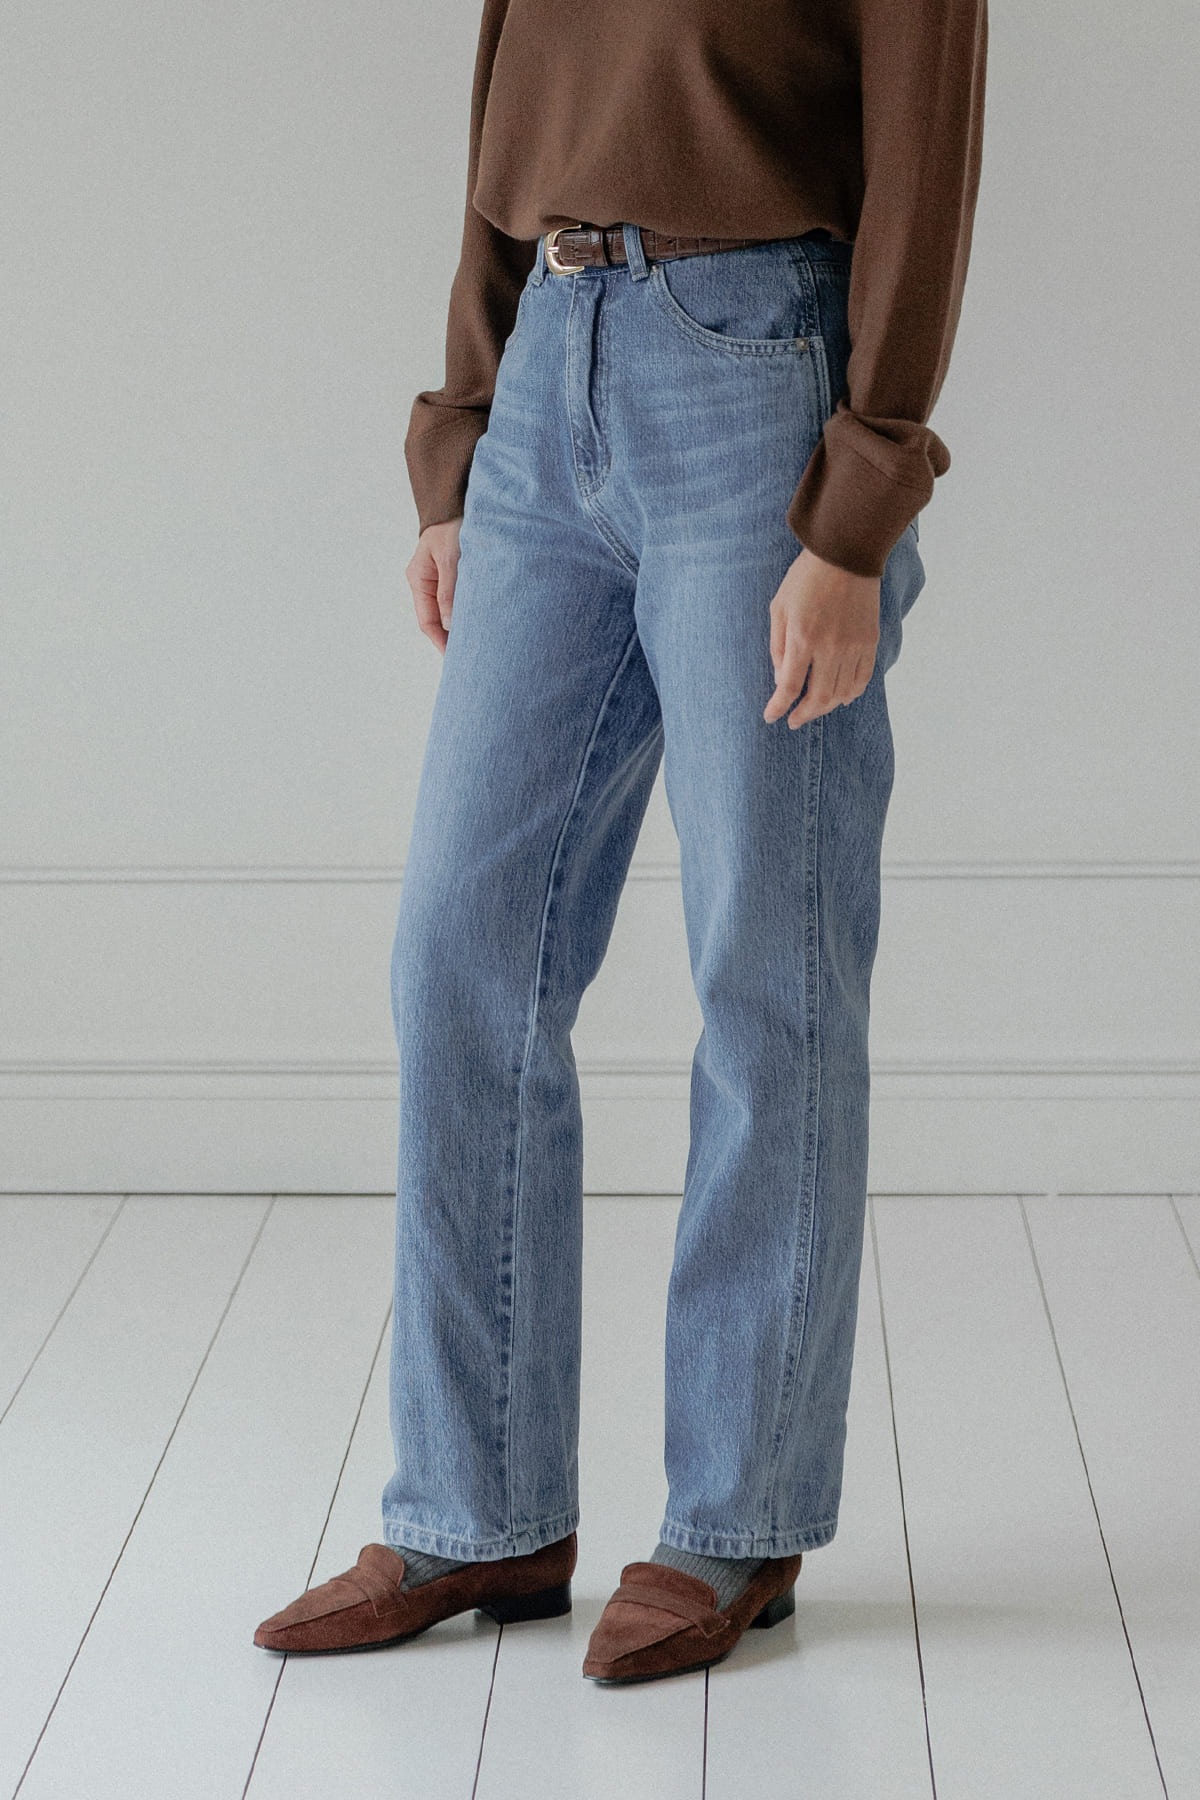 Hague Jeans (light blue)